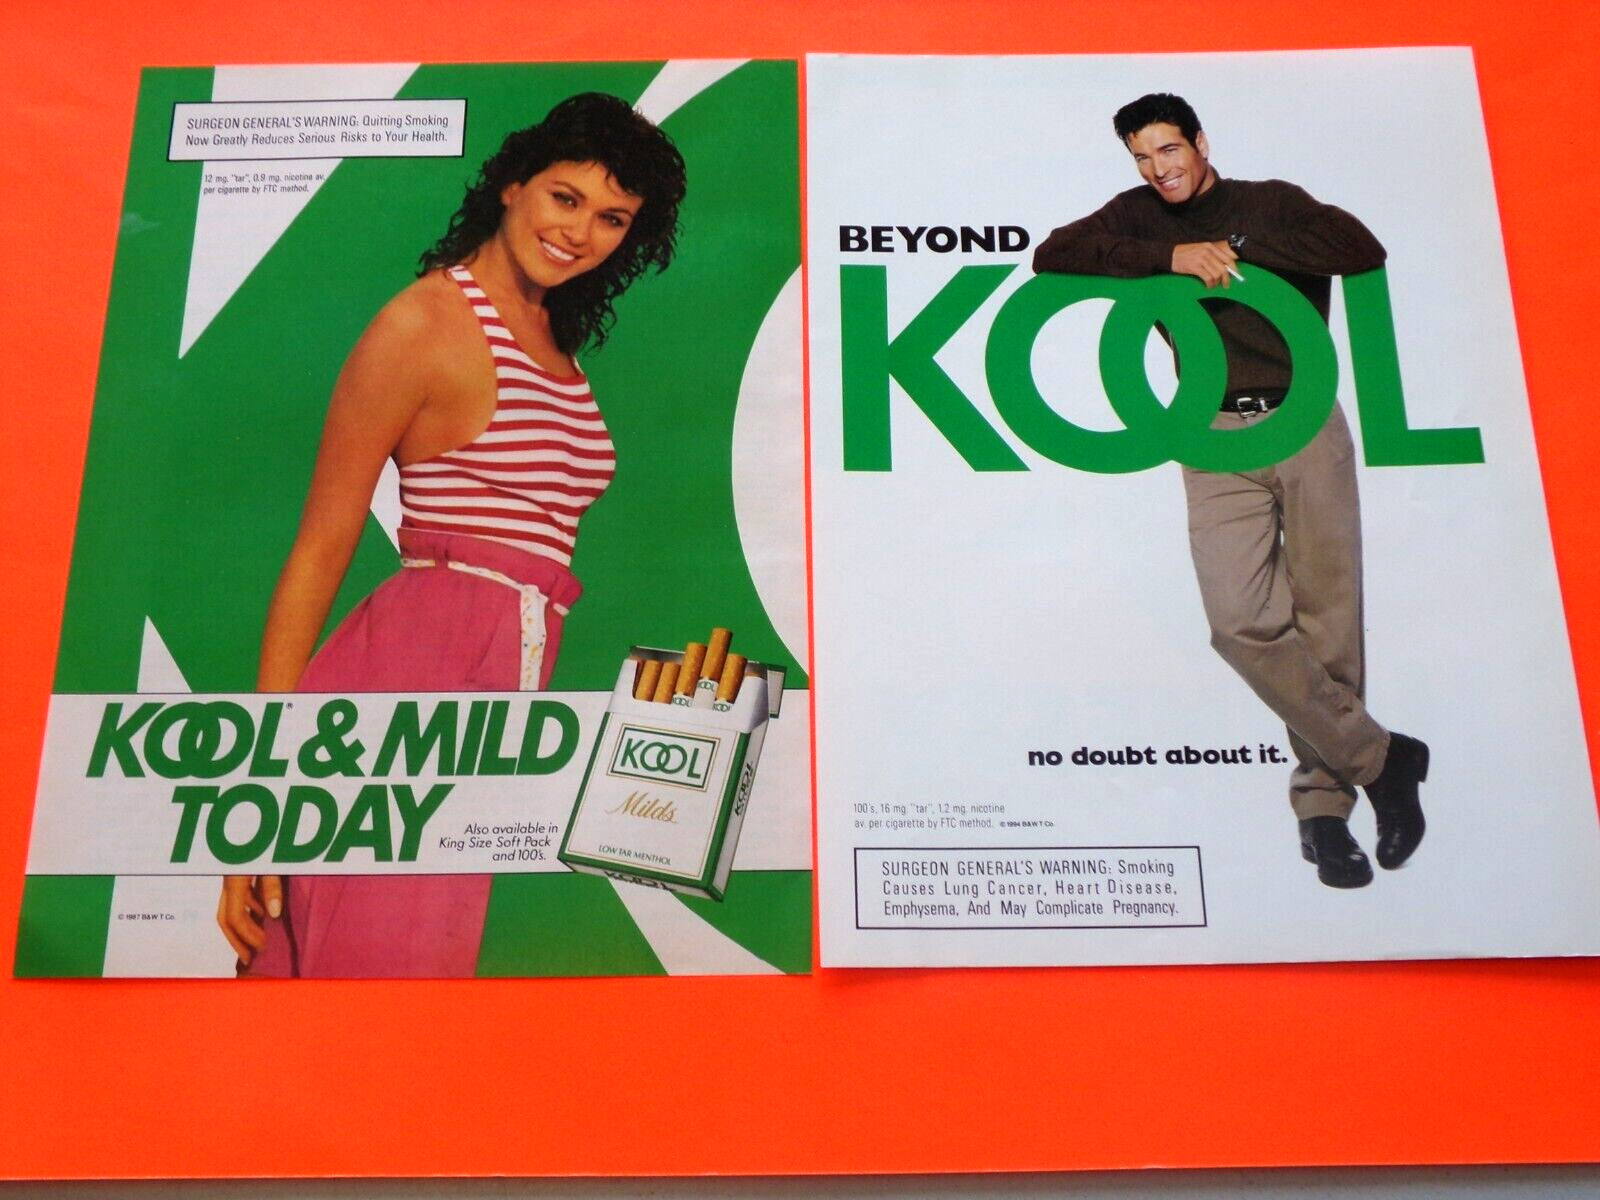 2 Kool Cigarette Ad 1994 Beyond Kool - 1987 Kool & Mild Today